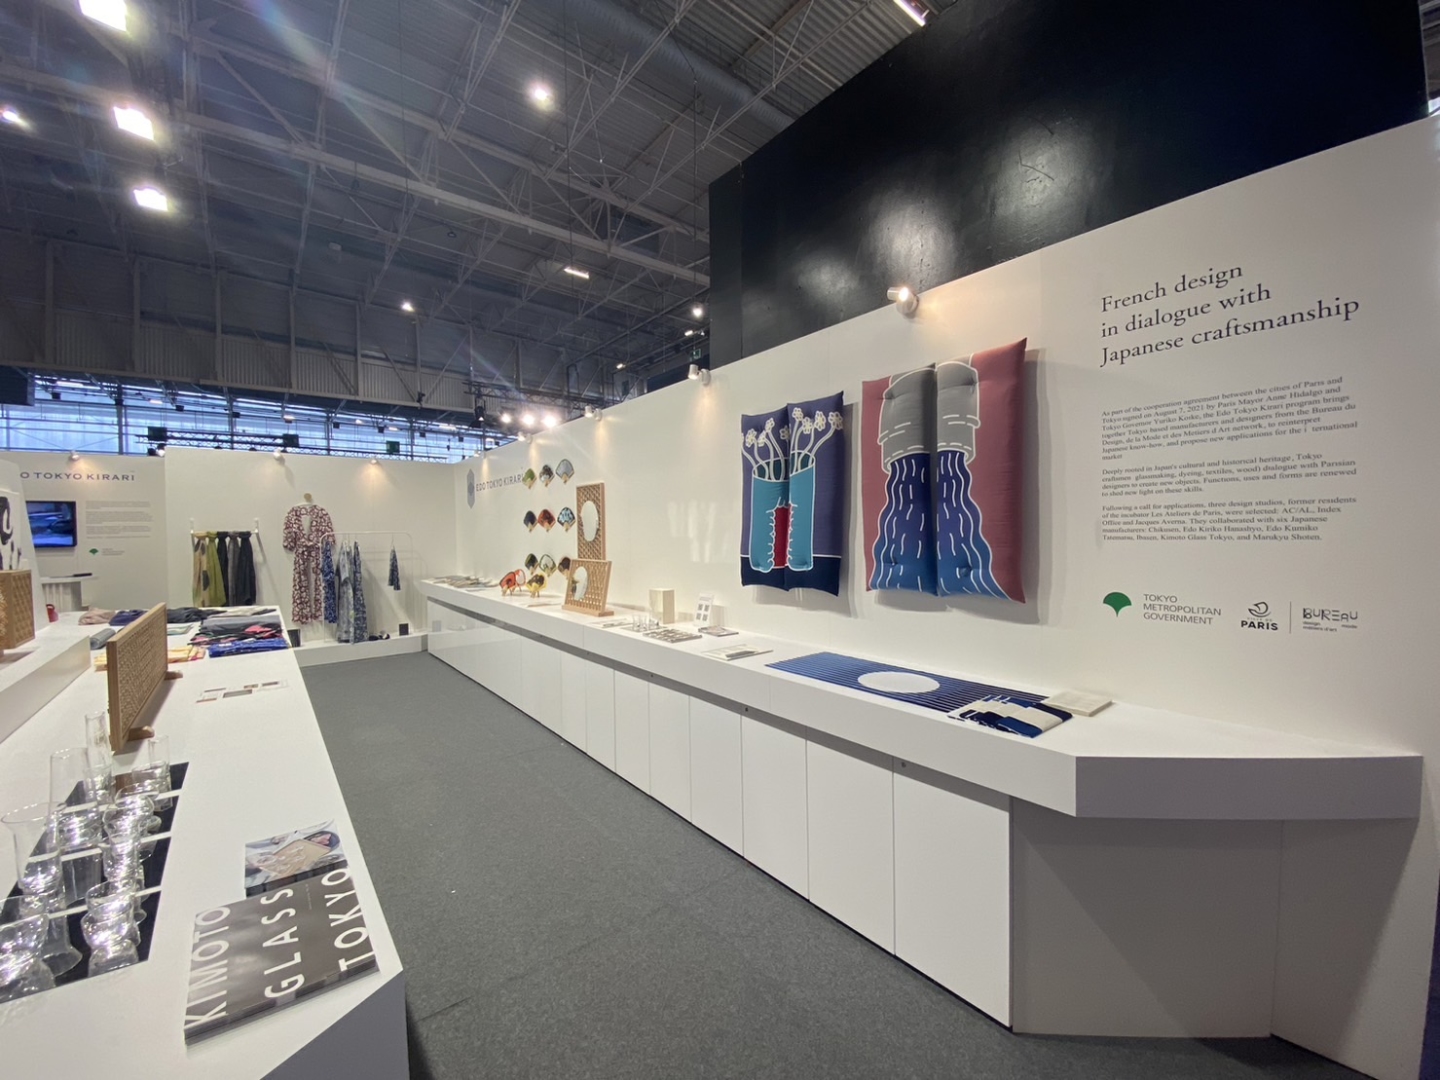 法国国际贸易博览会展示了东京引以为豪的江户时尚！